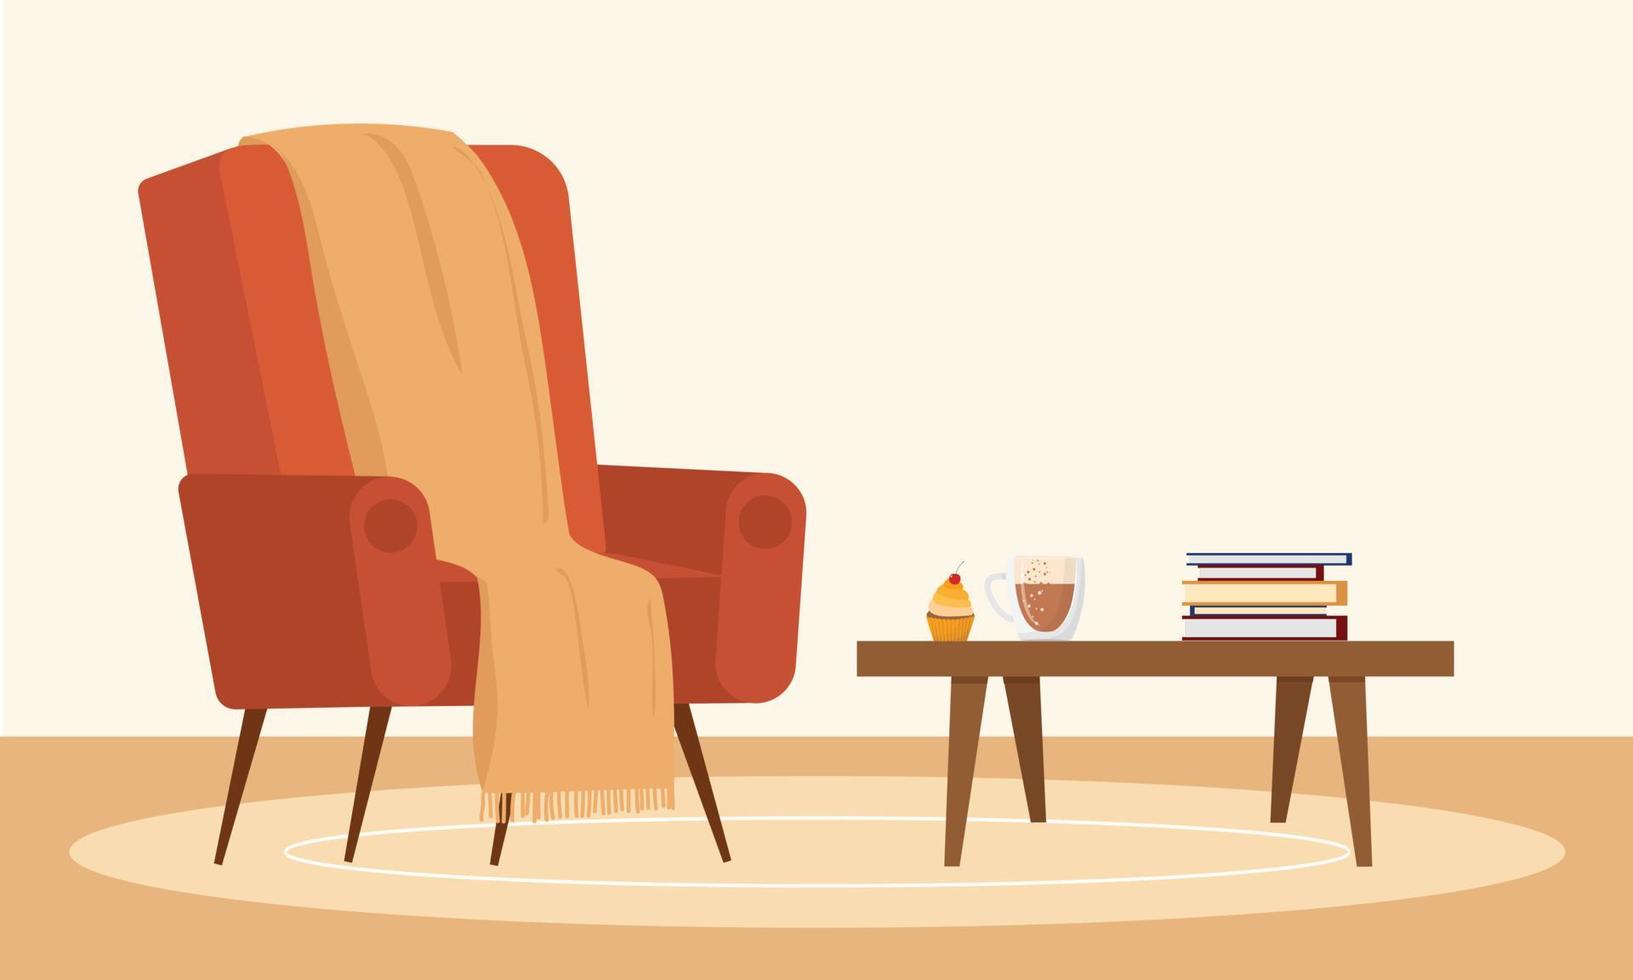 knus fauteuil met gepleit, boek, koffie en muffin. vector illustratie.